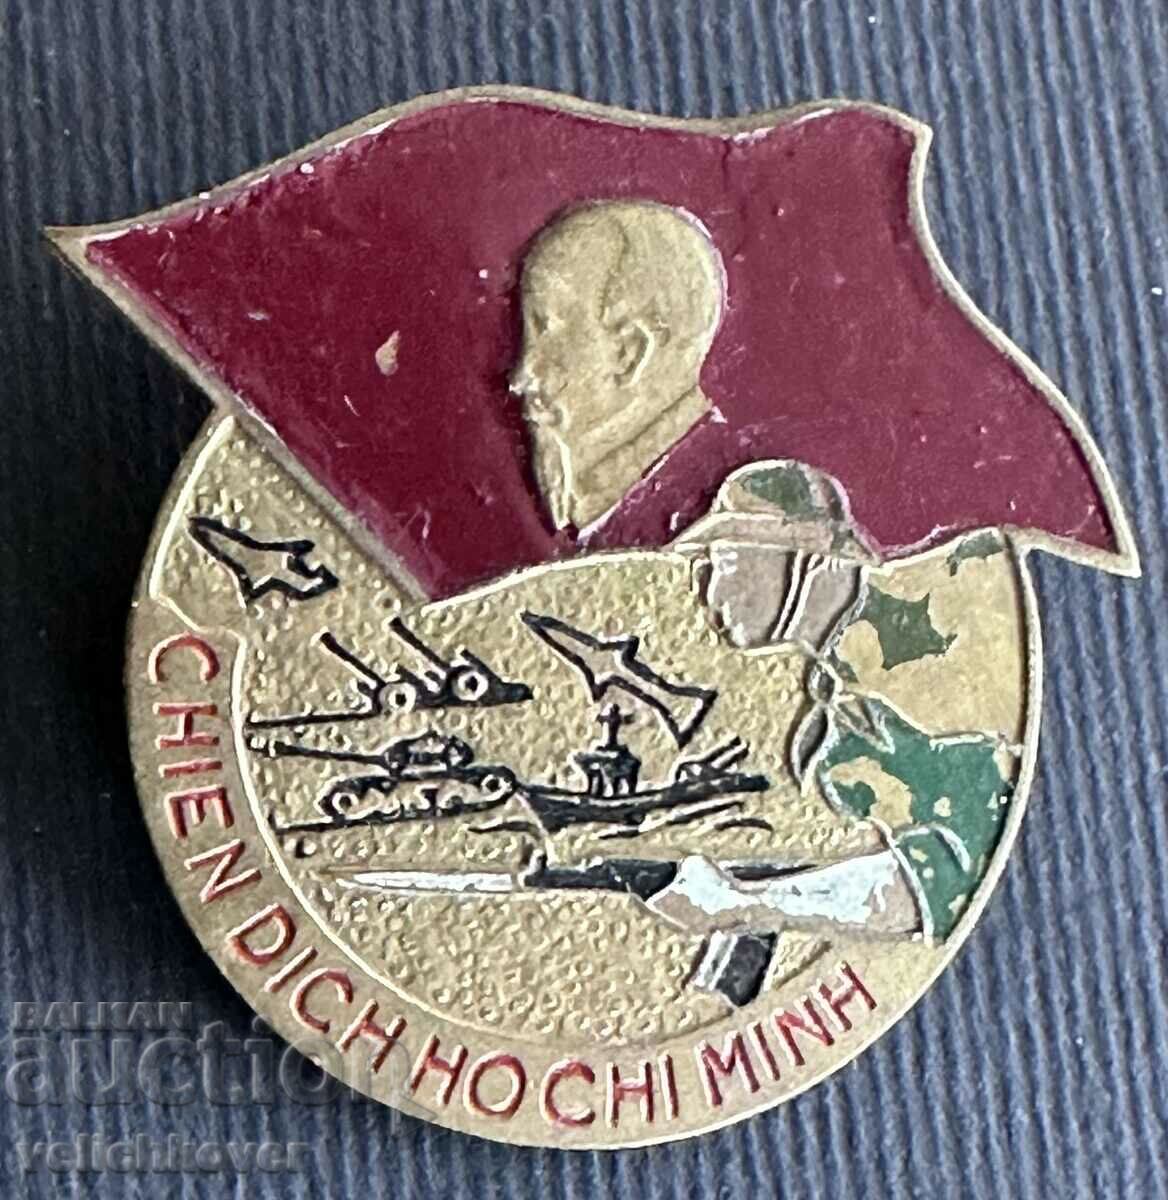 36325 Insigna militară din Vietnam, perioada Războiului din Vietnam, anii 70